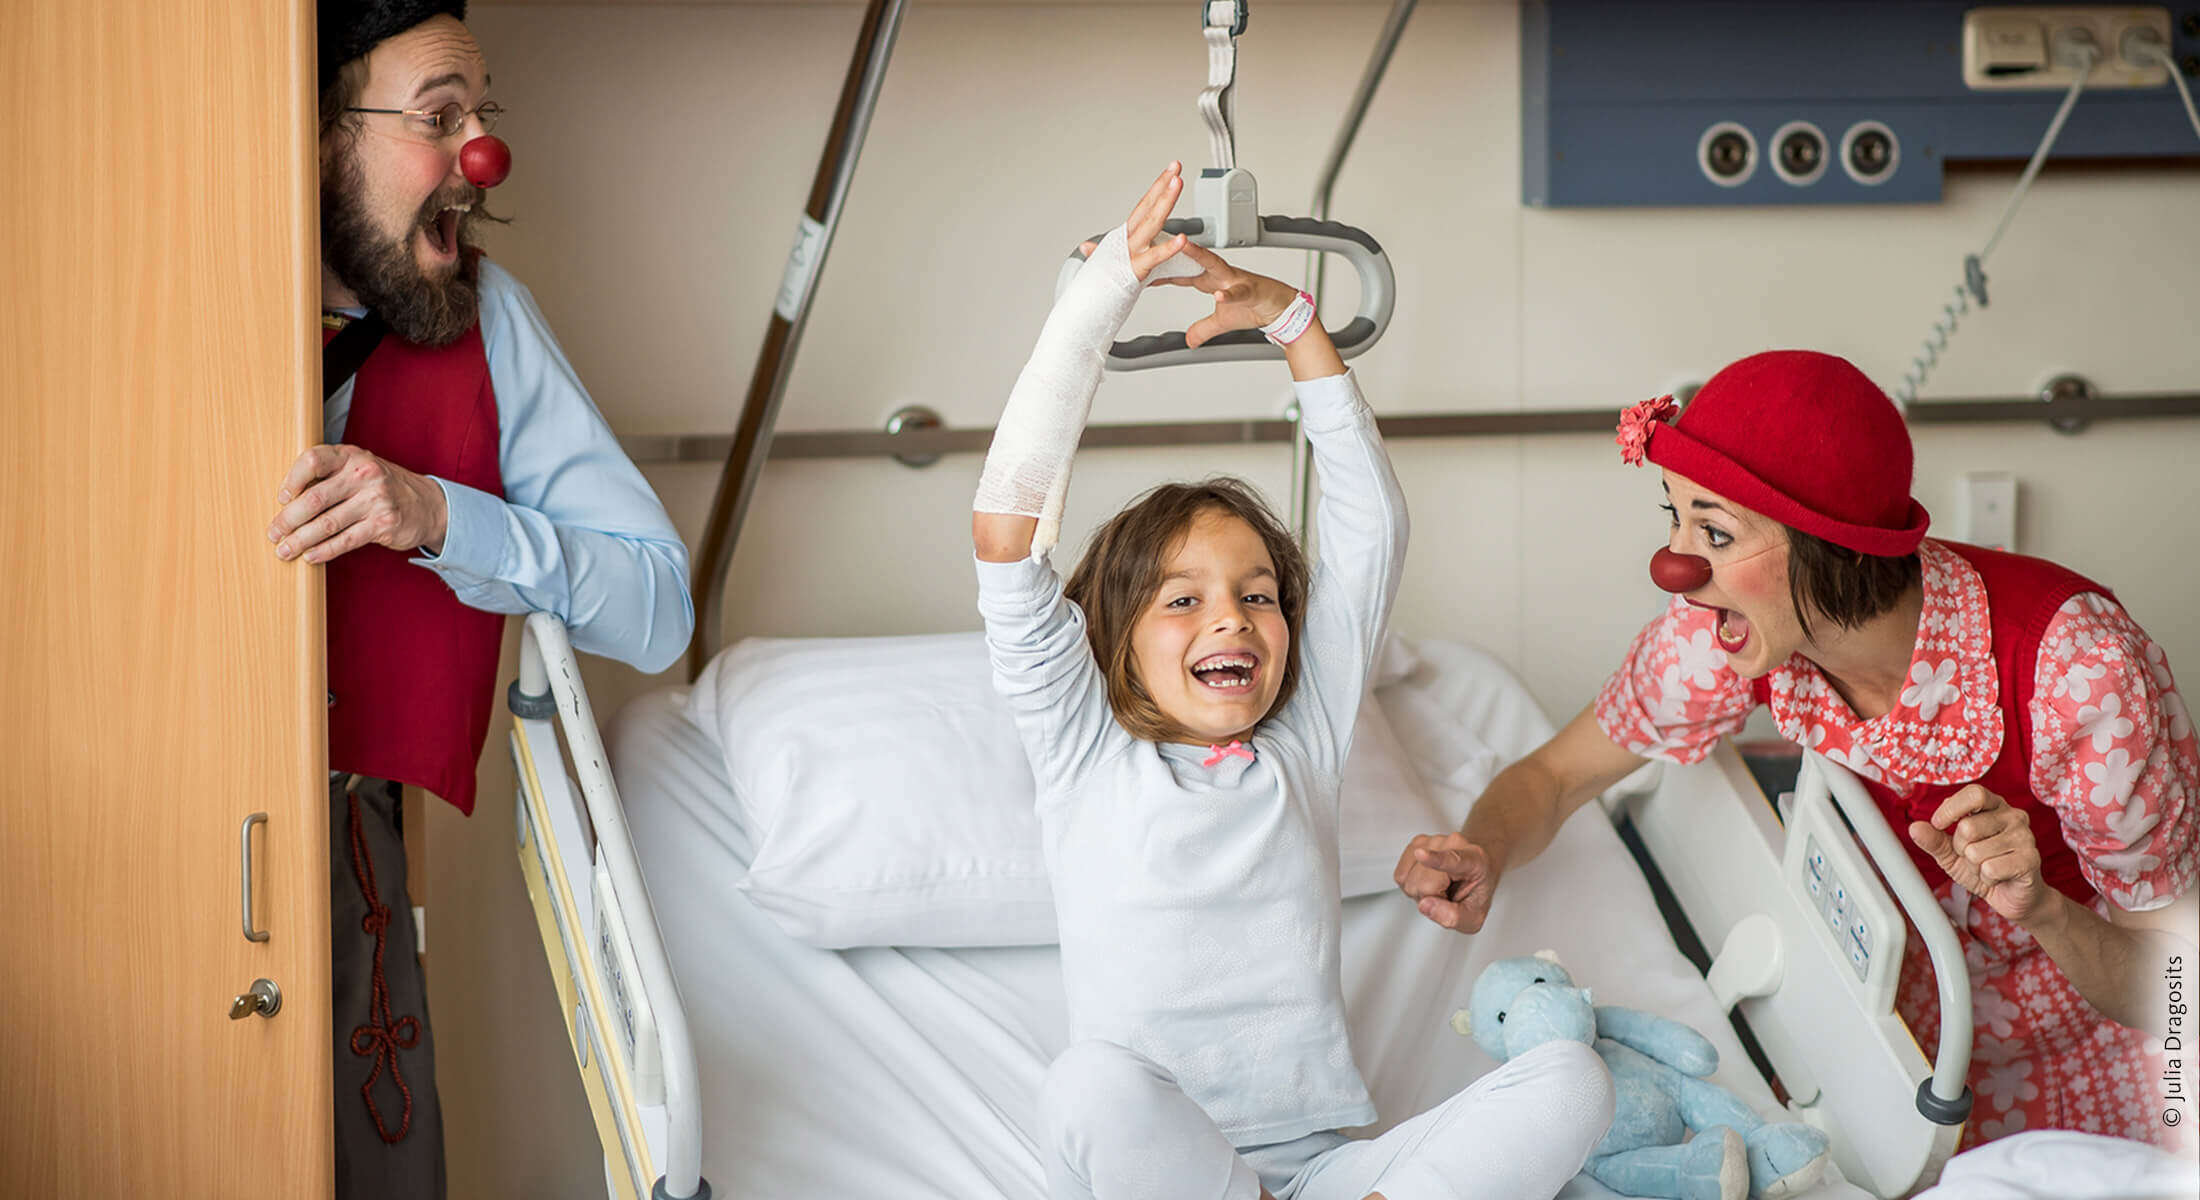 Kind sitzt im Spitalsbett und hebt fröhlich die Hände in die Luft während eine Clownin neben ihr sie zum Lachen bringt.